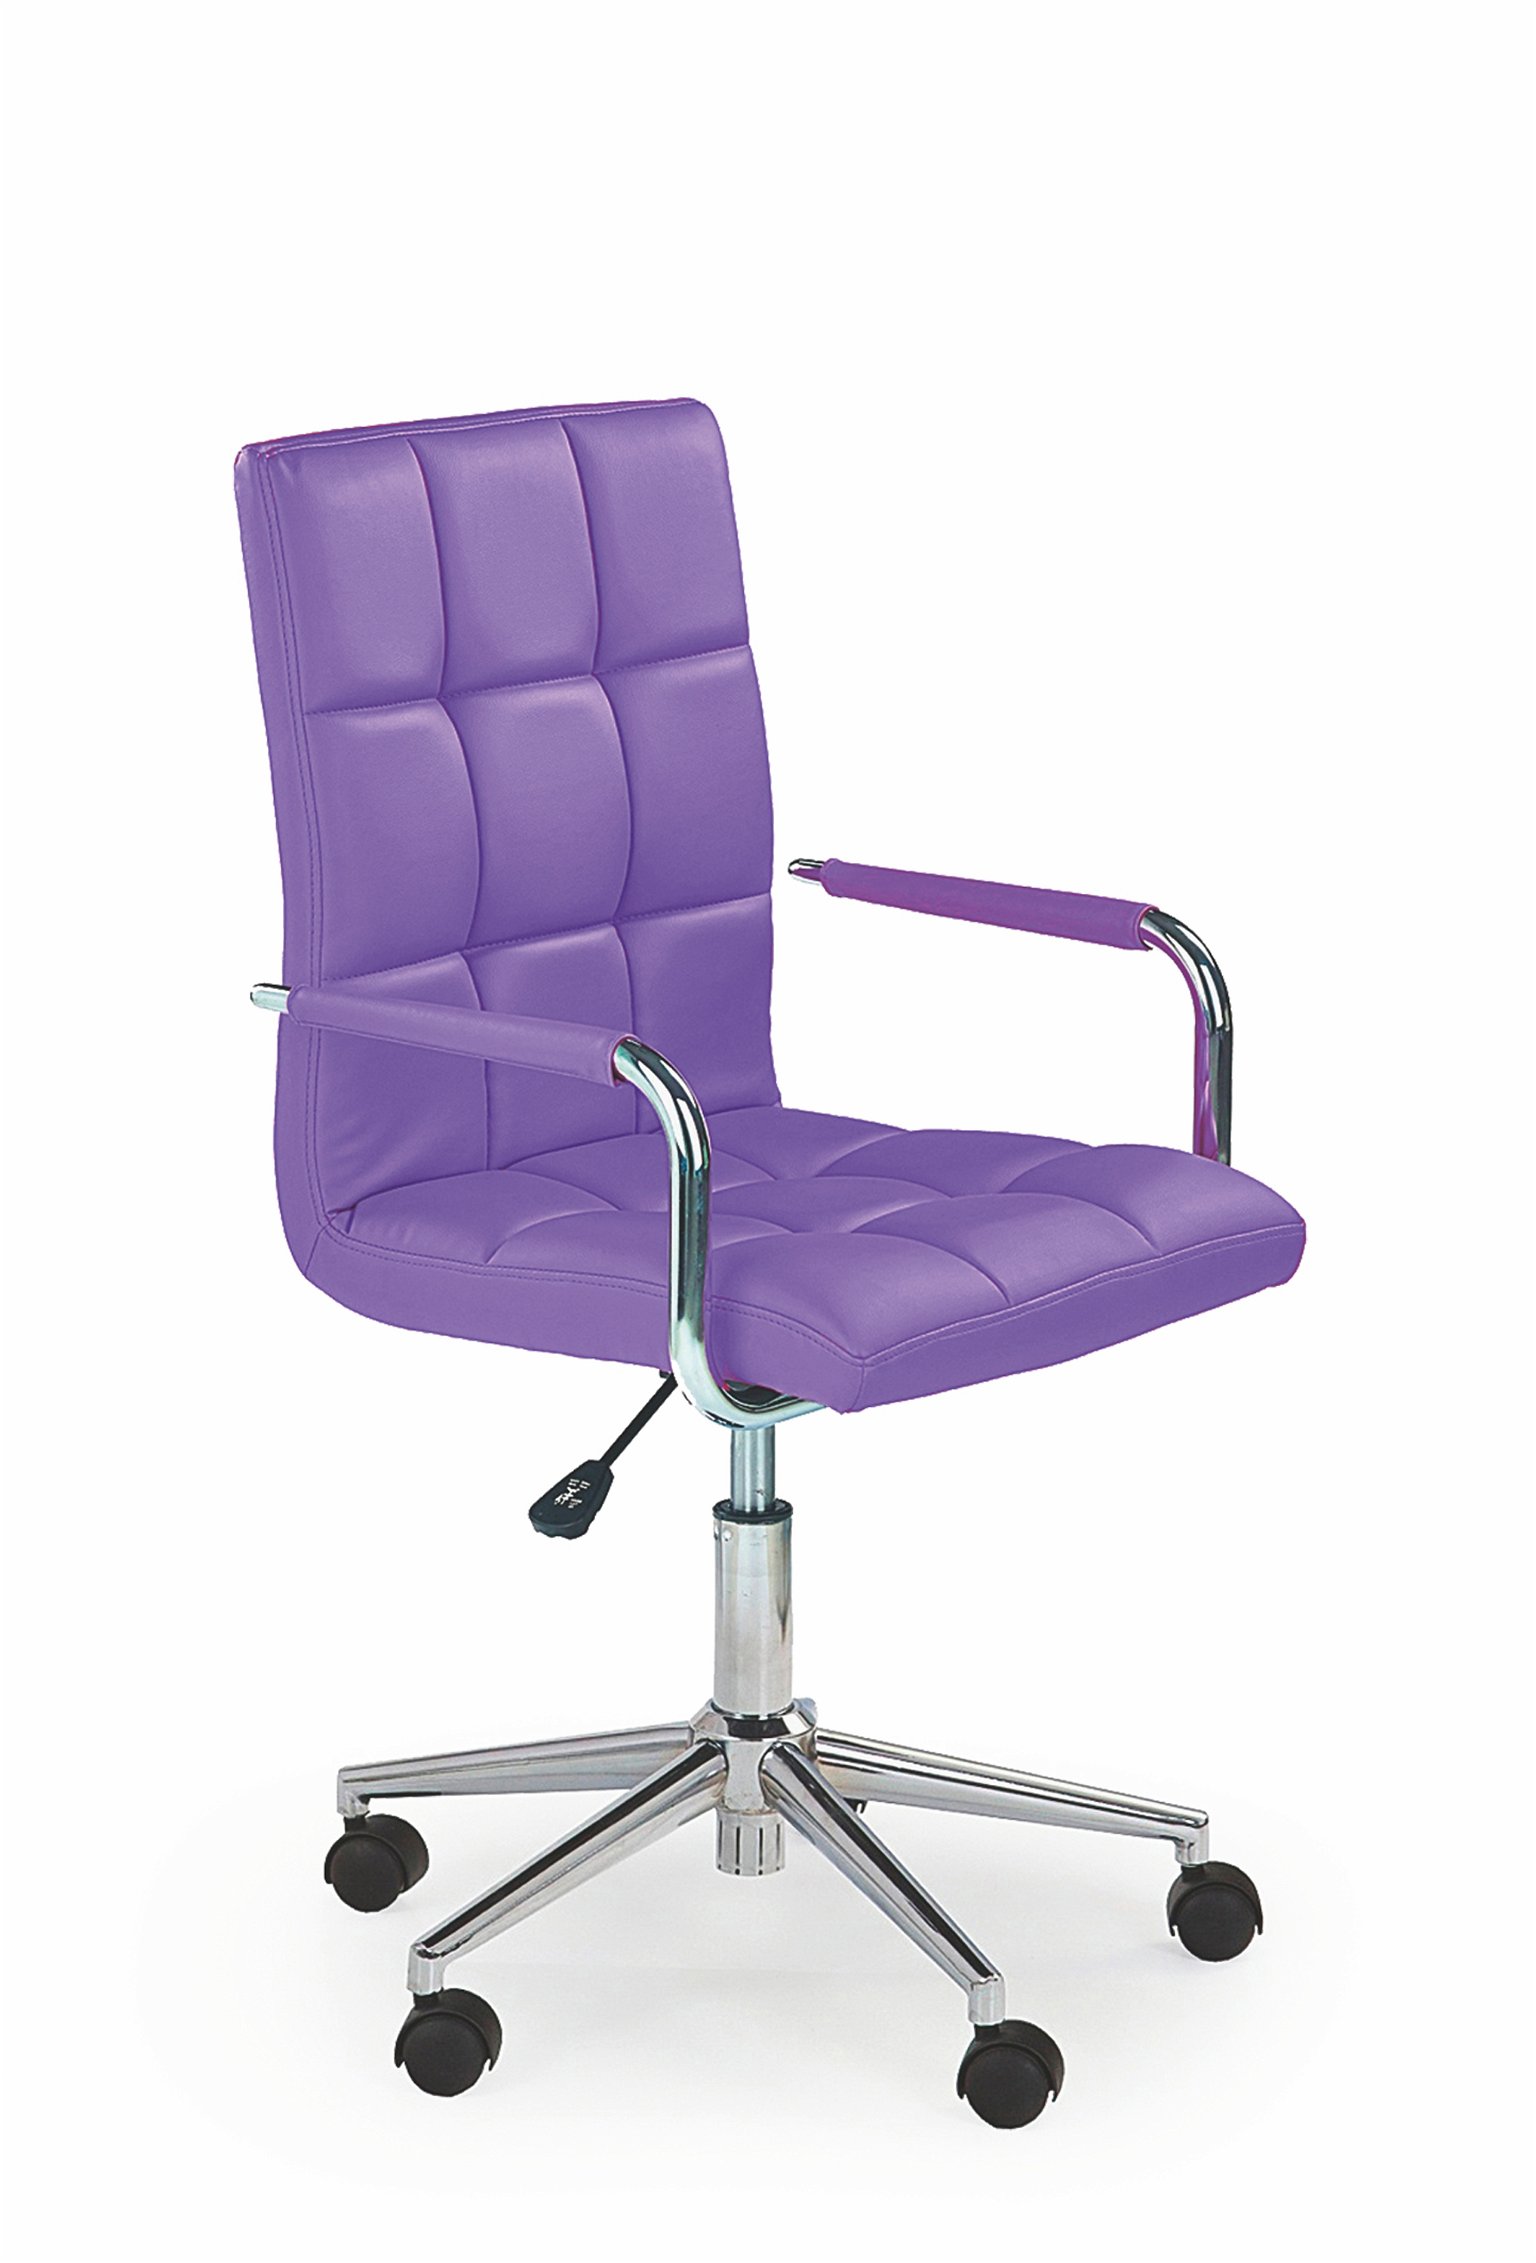 Vaikiška kėdė GONZO 2, violetinė - 1